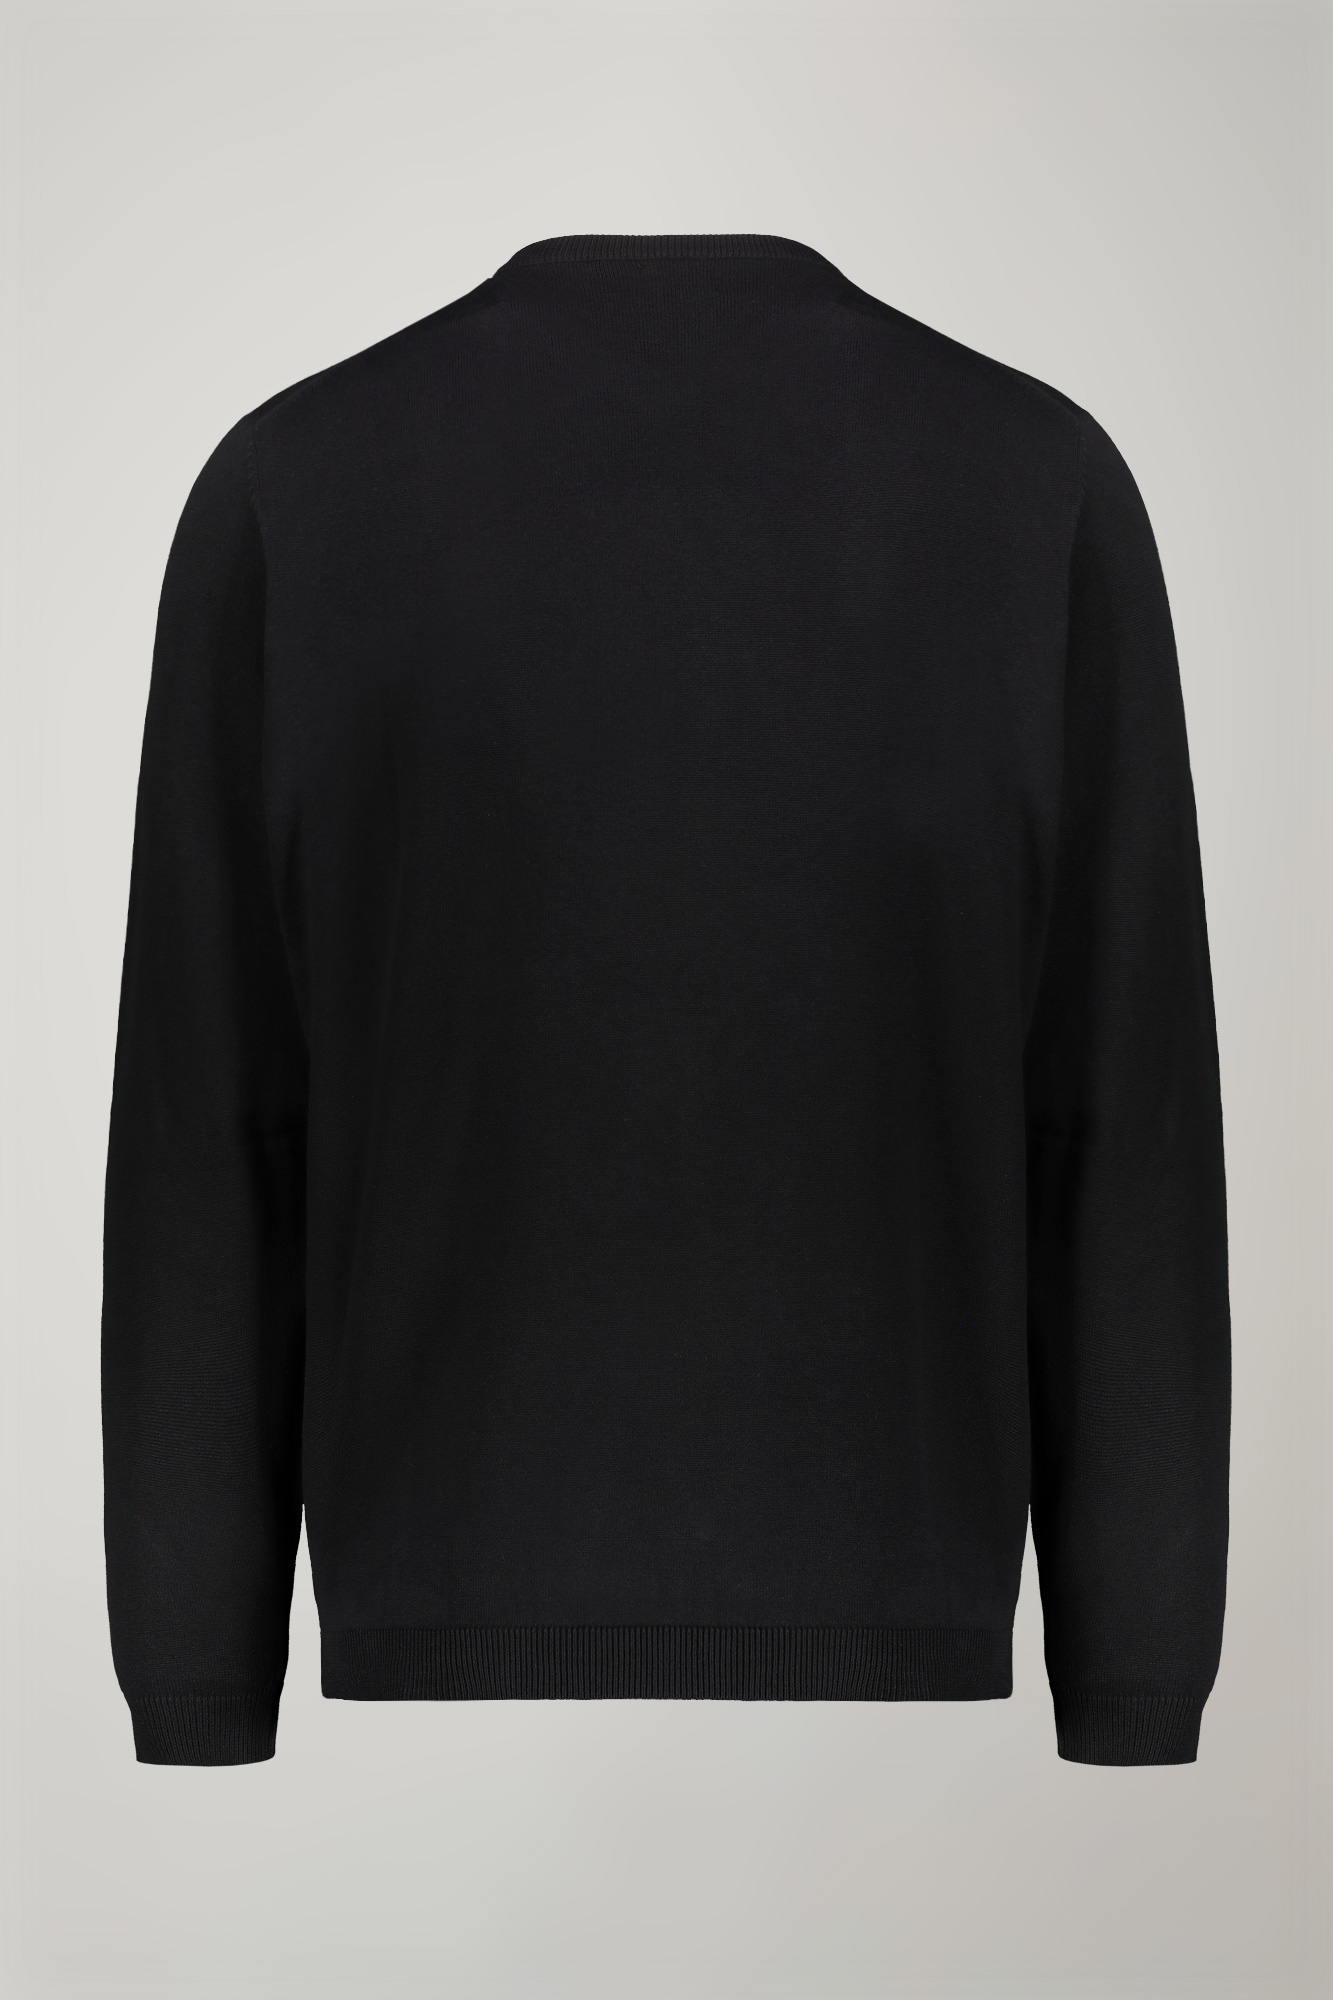 Men's v neck sweater 100% cotton regular fit image number null